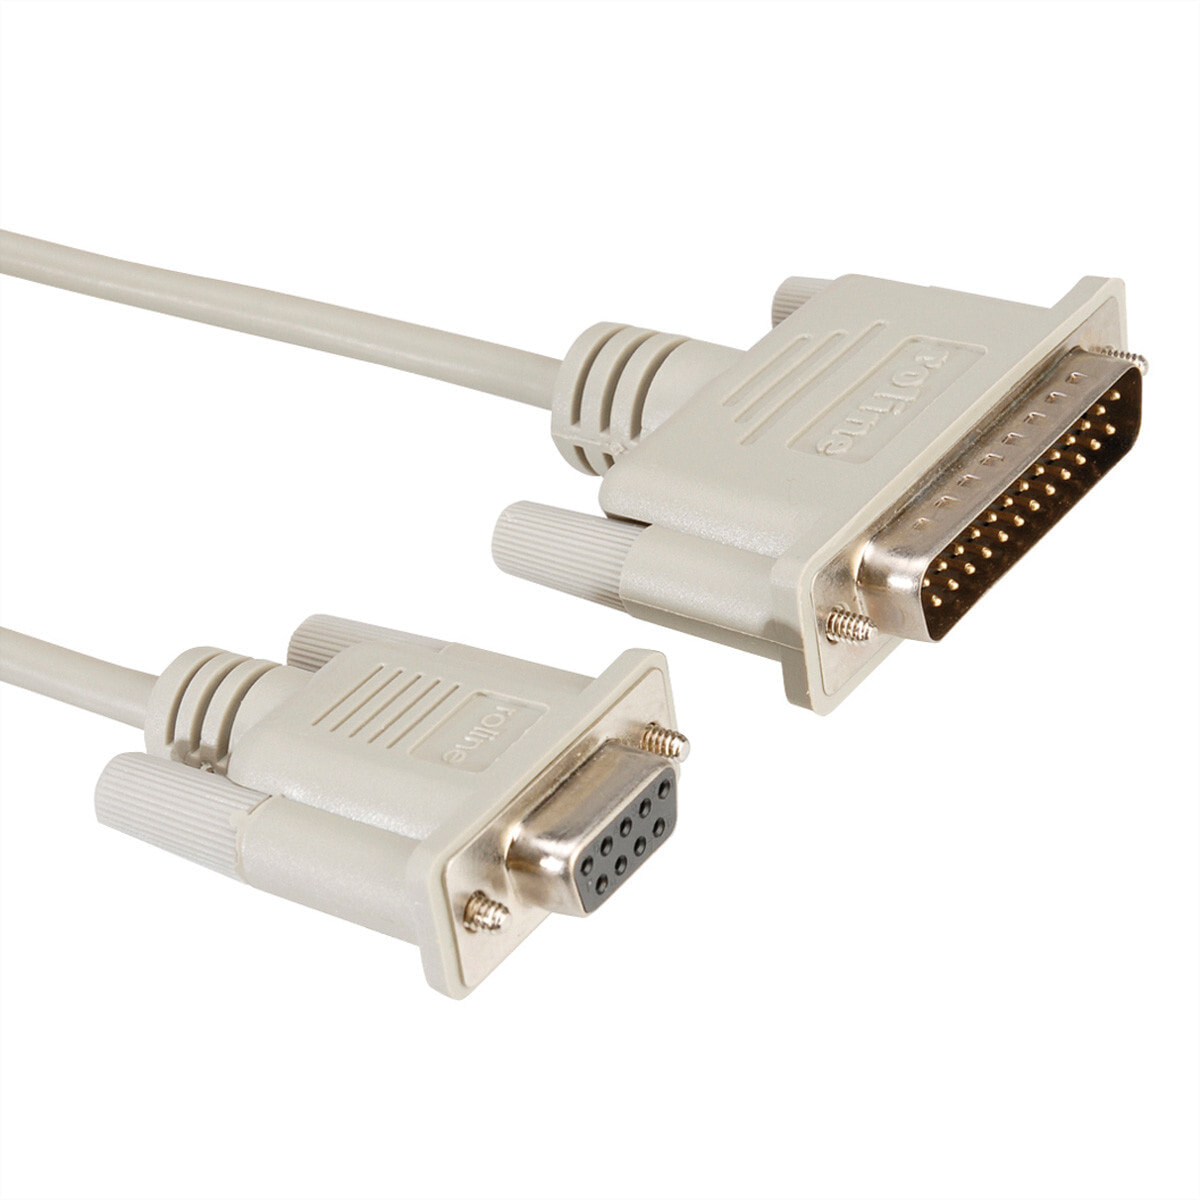 ROLINE Modem Cable, DB9 F - DB25 M 3.0 m кабель последовательной связи 11.01.4530